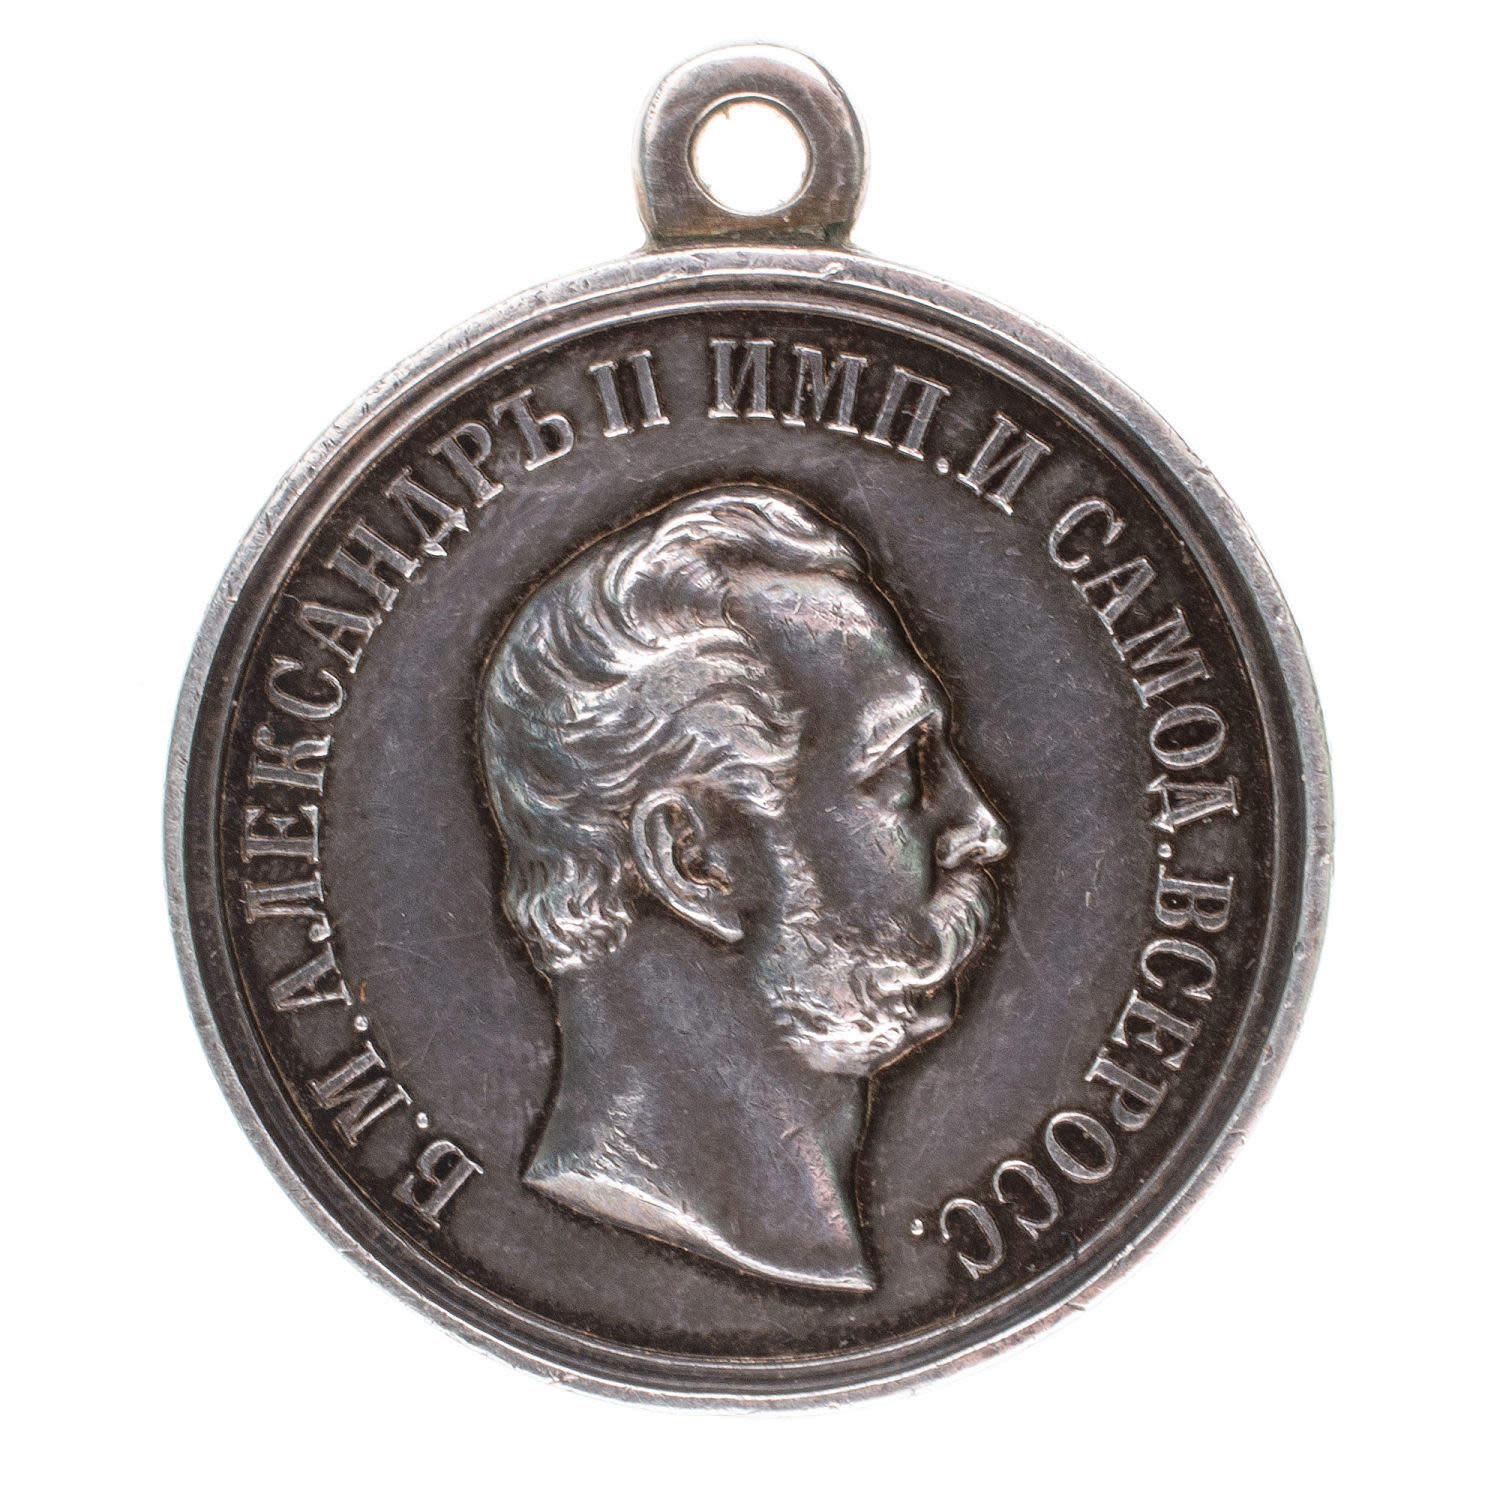 Медаль "За Усердие" с портретом Императора Александра II (1870 - 1881 гг). Нагрудная, 29 мм (без подписи). Серебро.